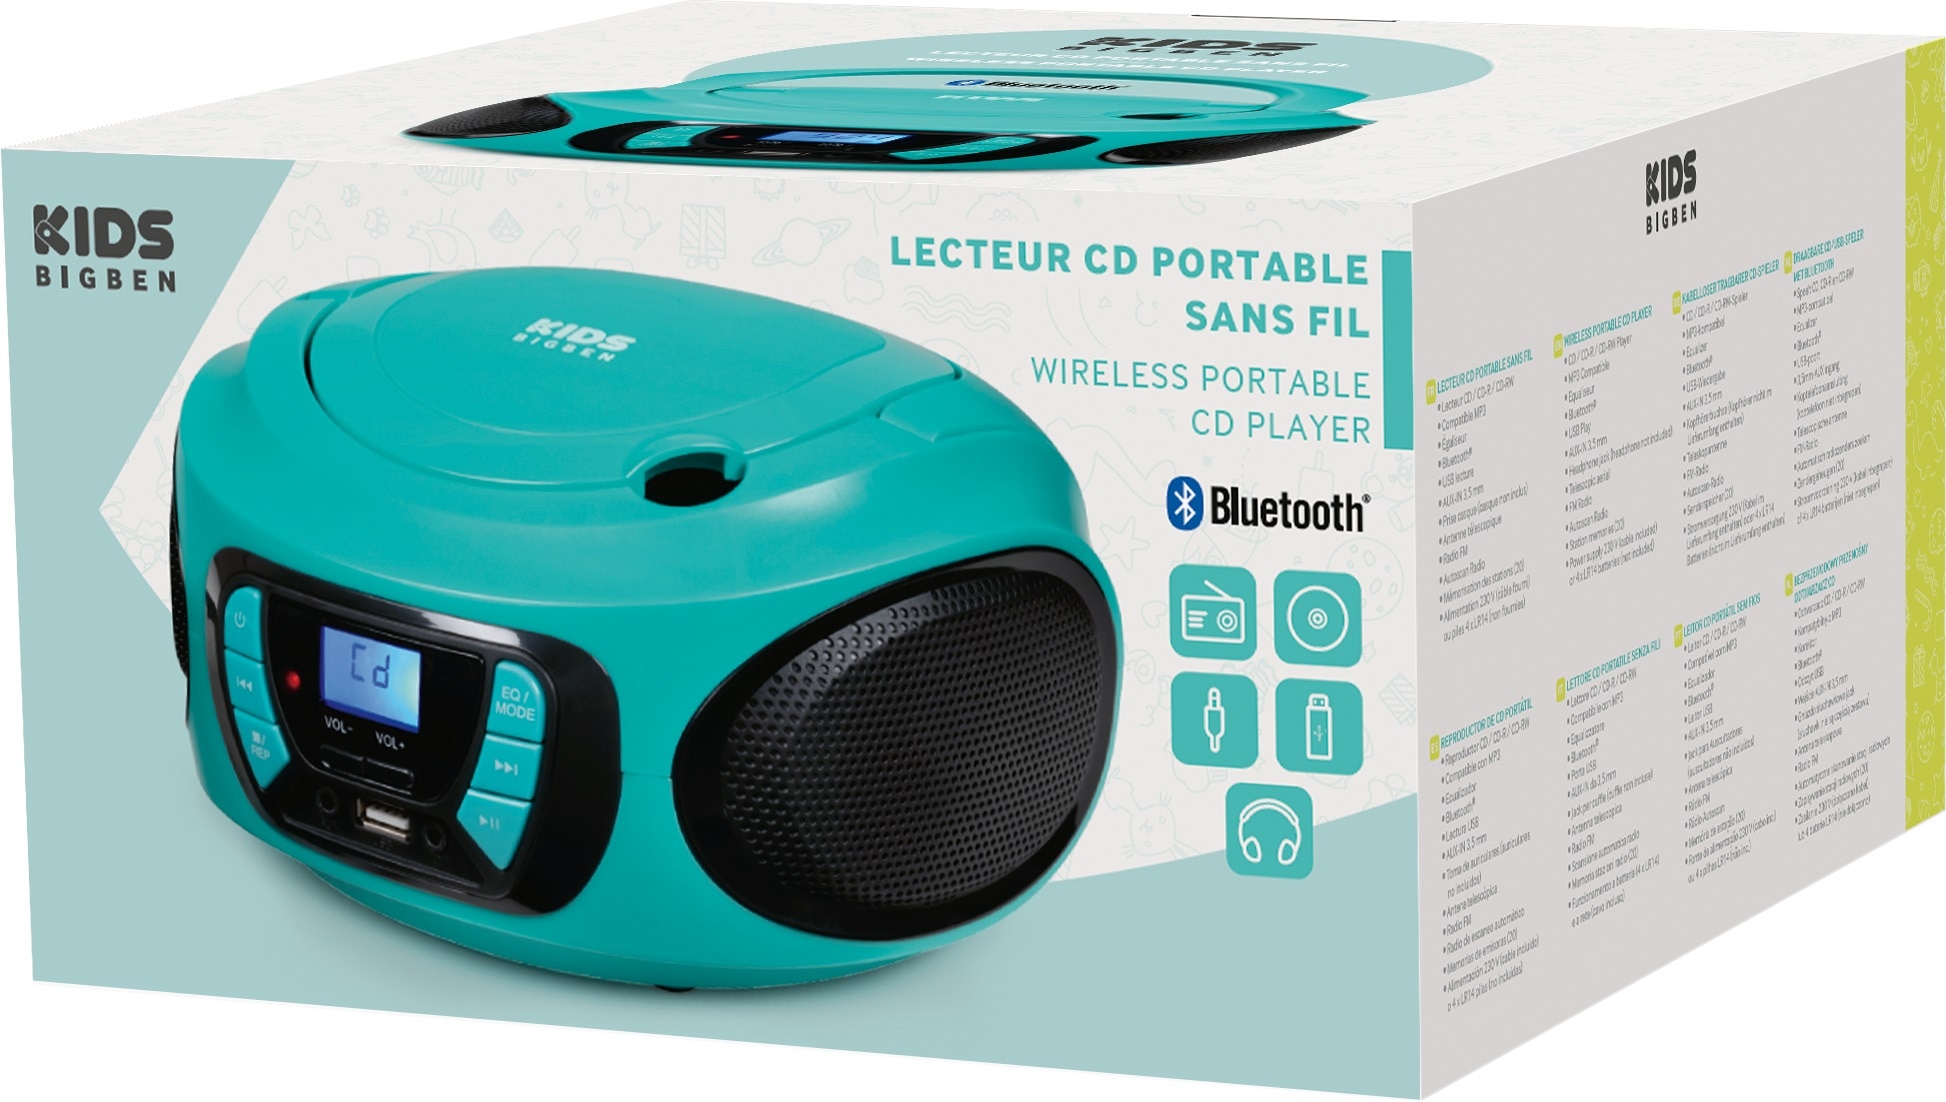 BigBen CD-Radiorecorder »Kids AU387315 kaufen CD/Radio ( Bluetooth Rechnung USB/BT Tragbares FM-Tuner) auf blau«